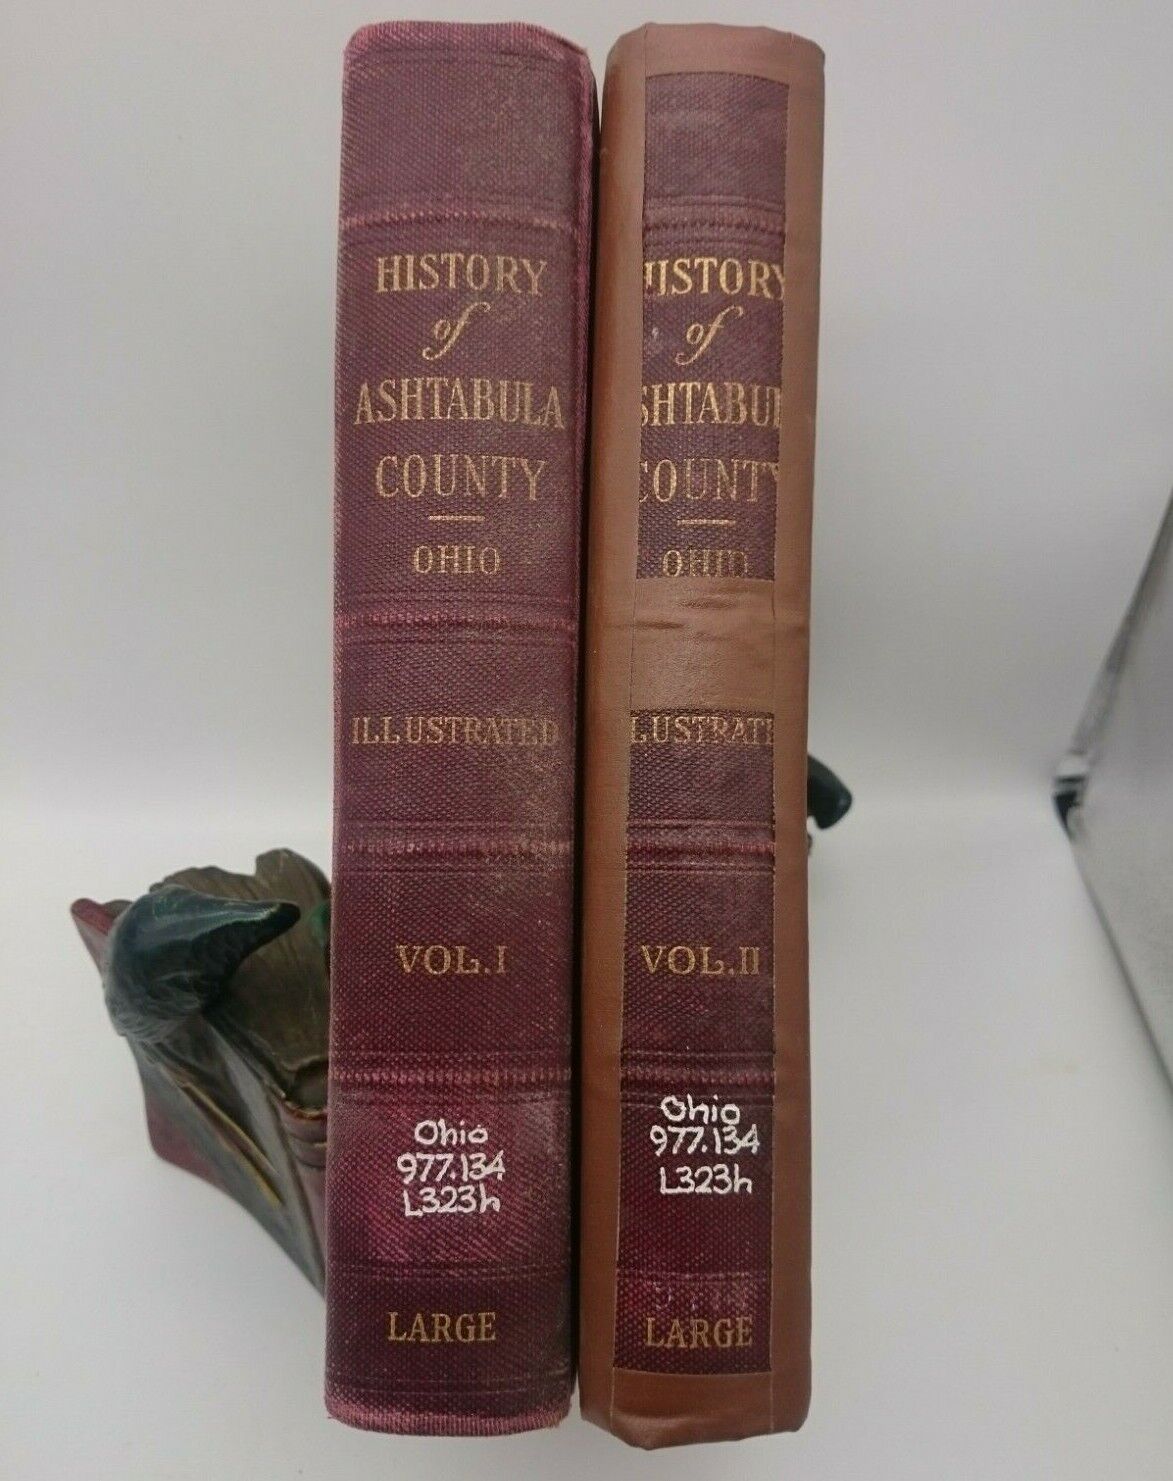 History of Ashtabula County Ohio by Moina W. Large illustrated 2 Volume Set 1924